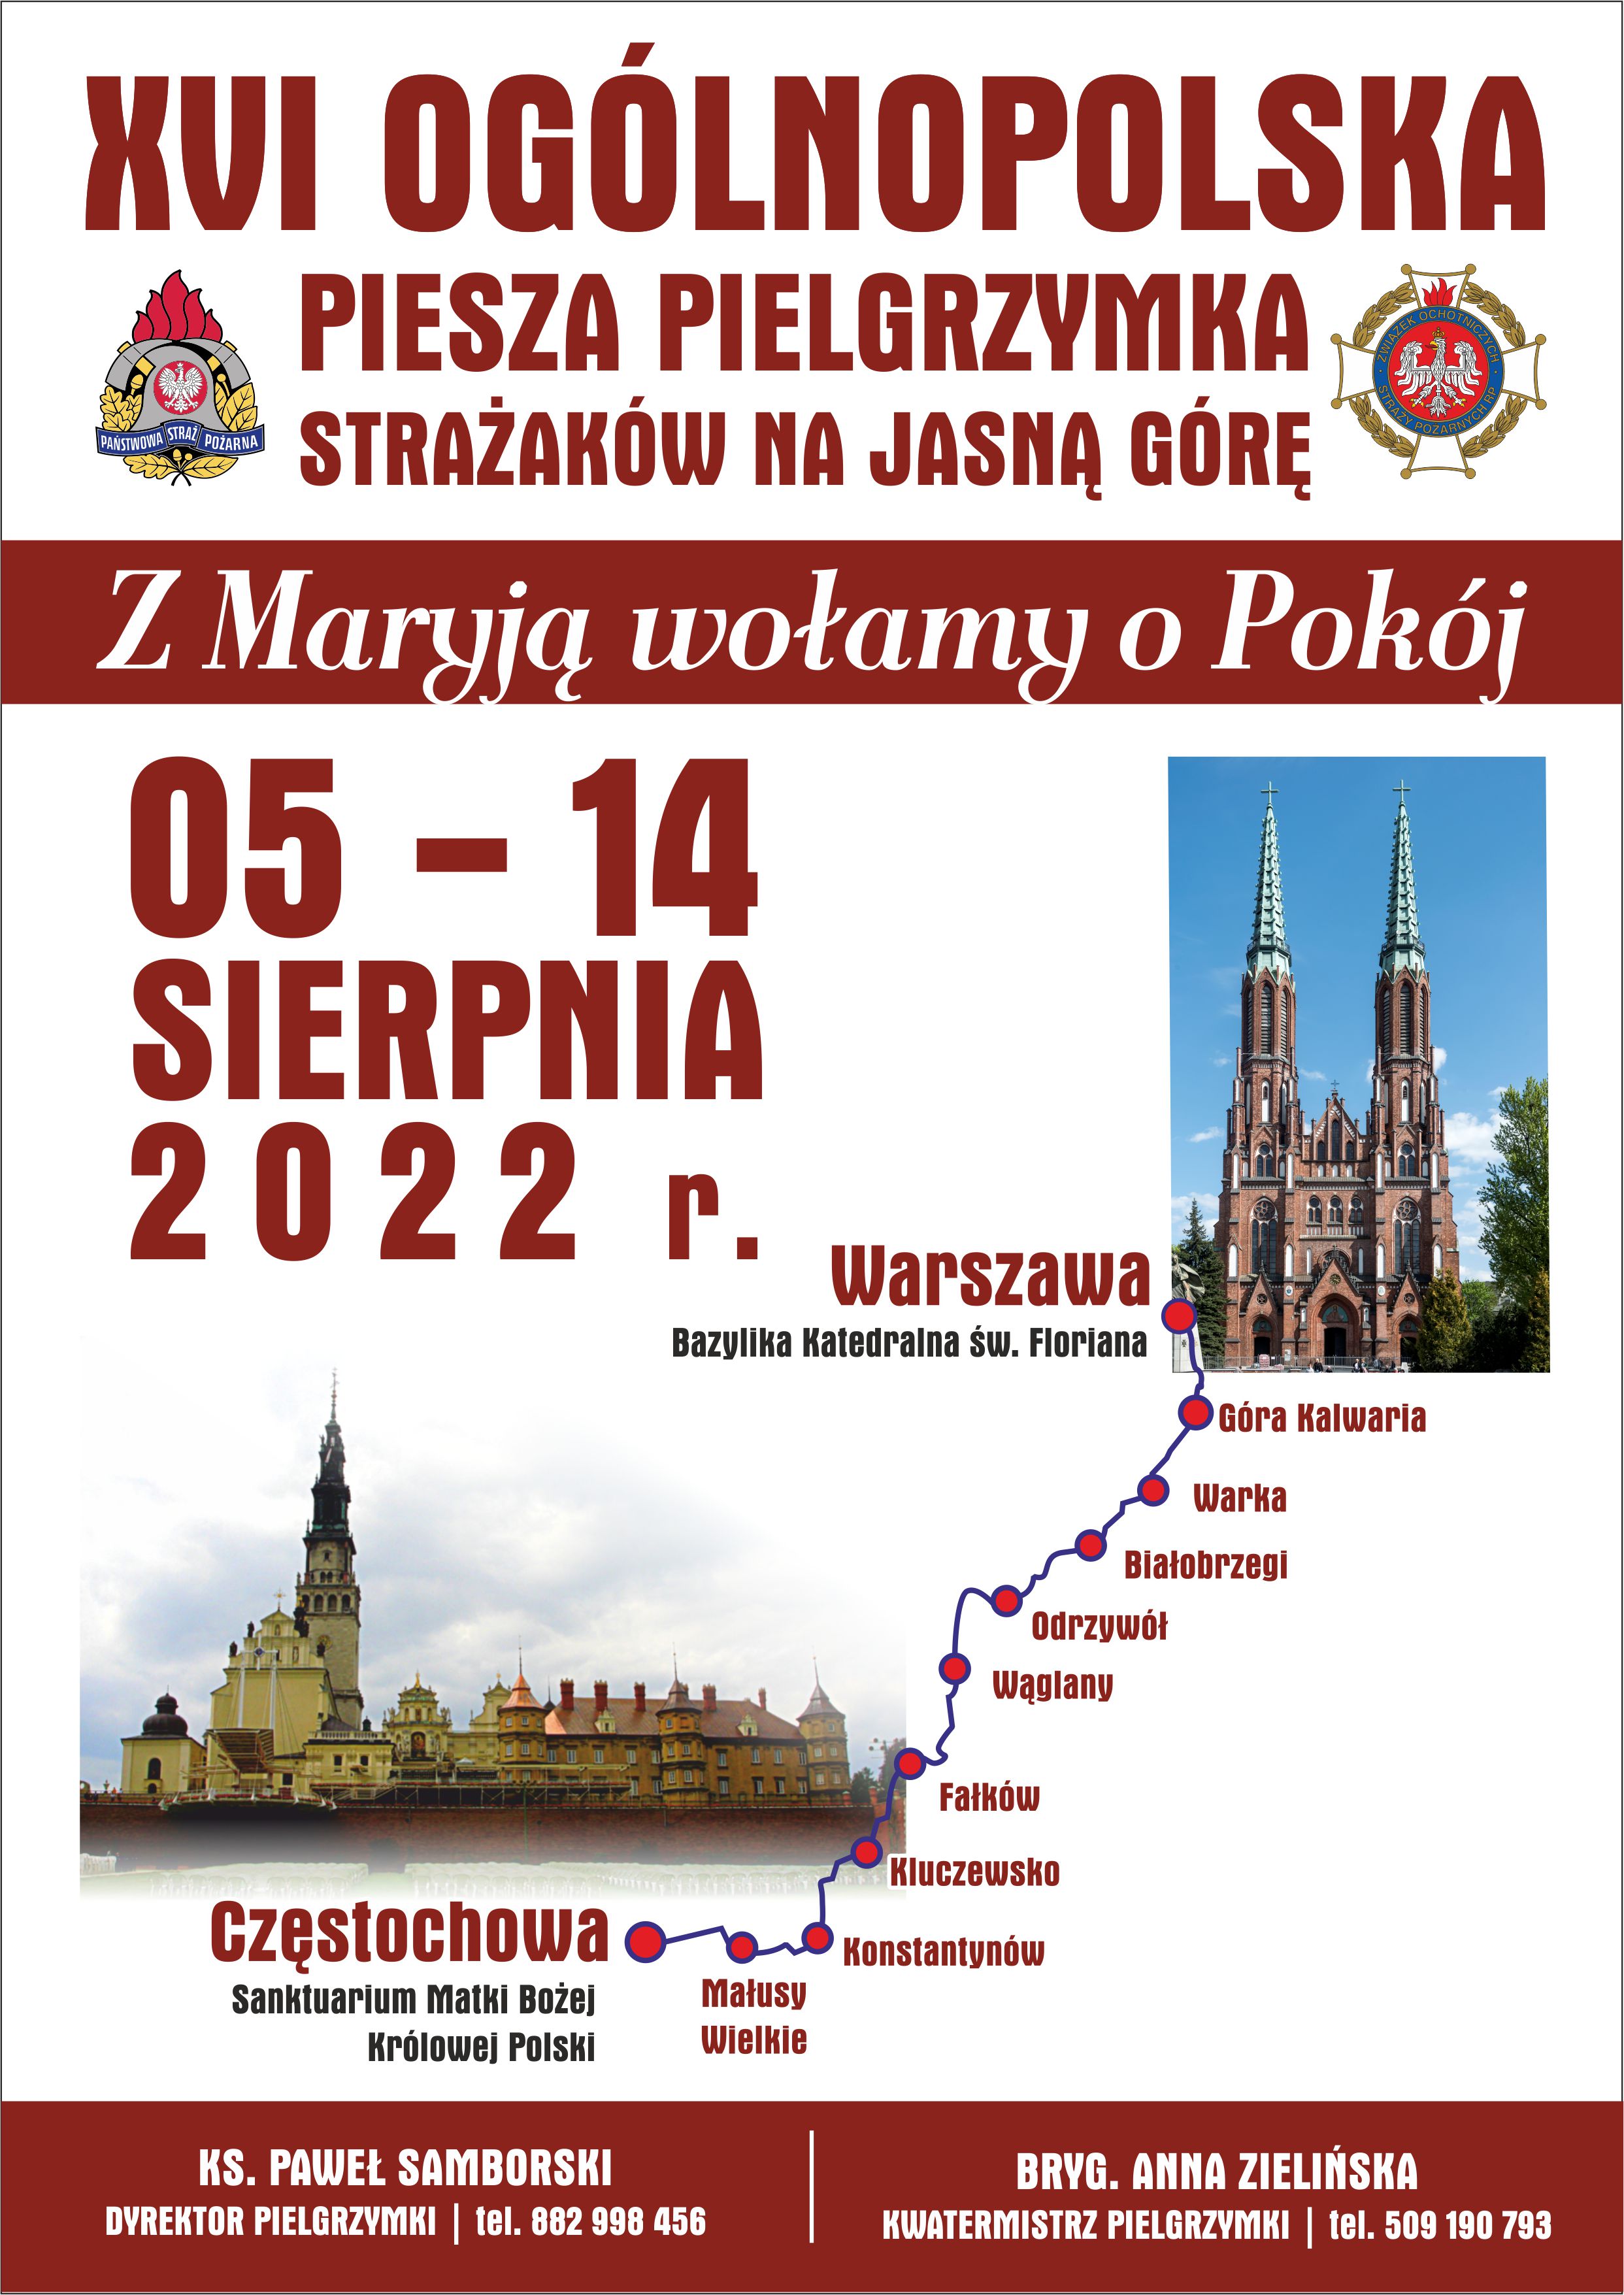 Plakat informujący o XVI Ogólnopolskiej Pieszej Pielgrzymce Strażaków na Jasną Górę